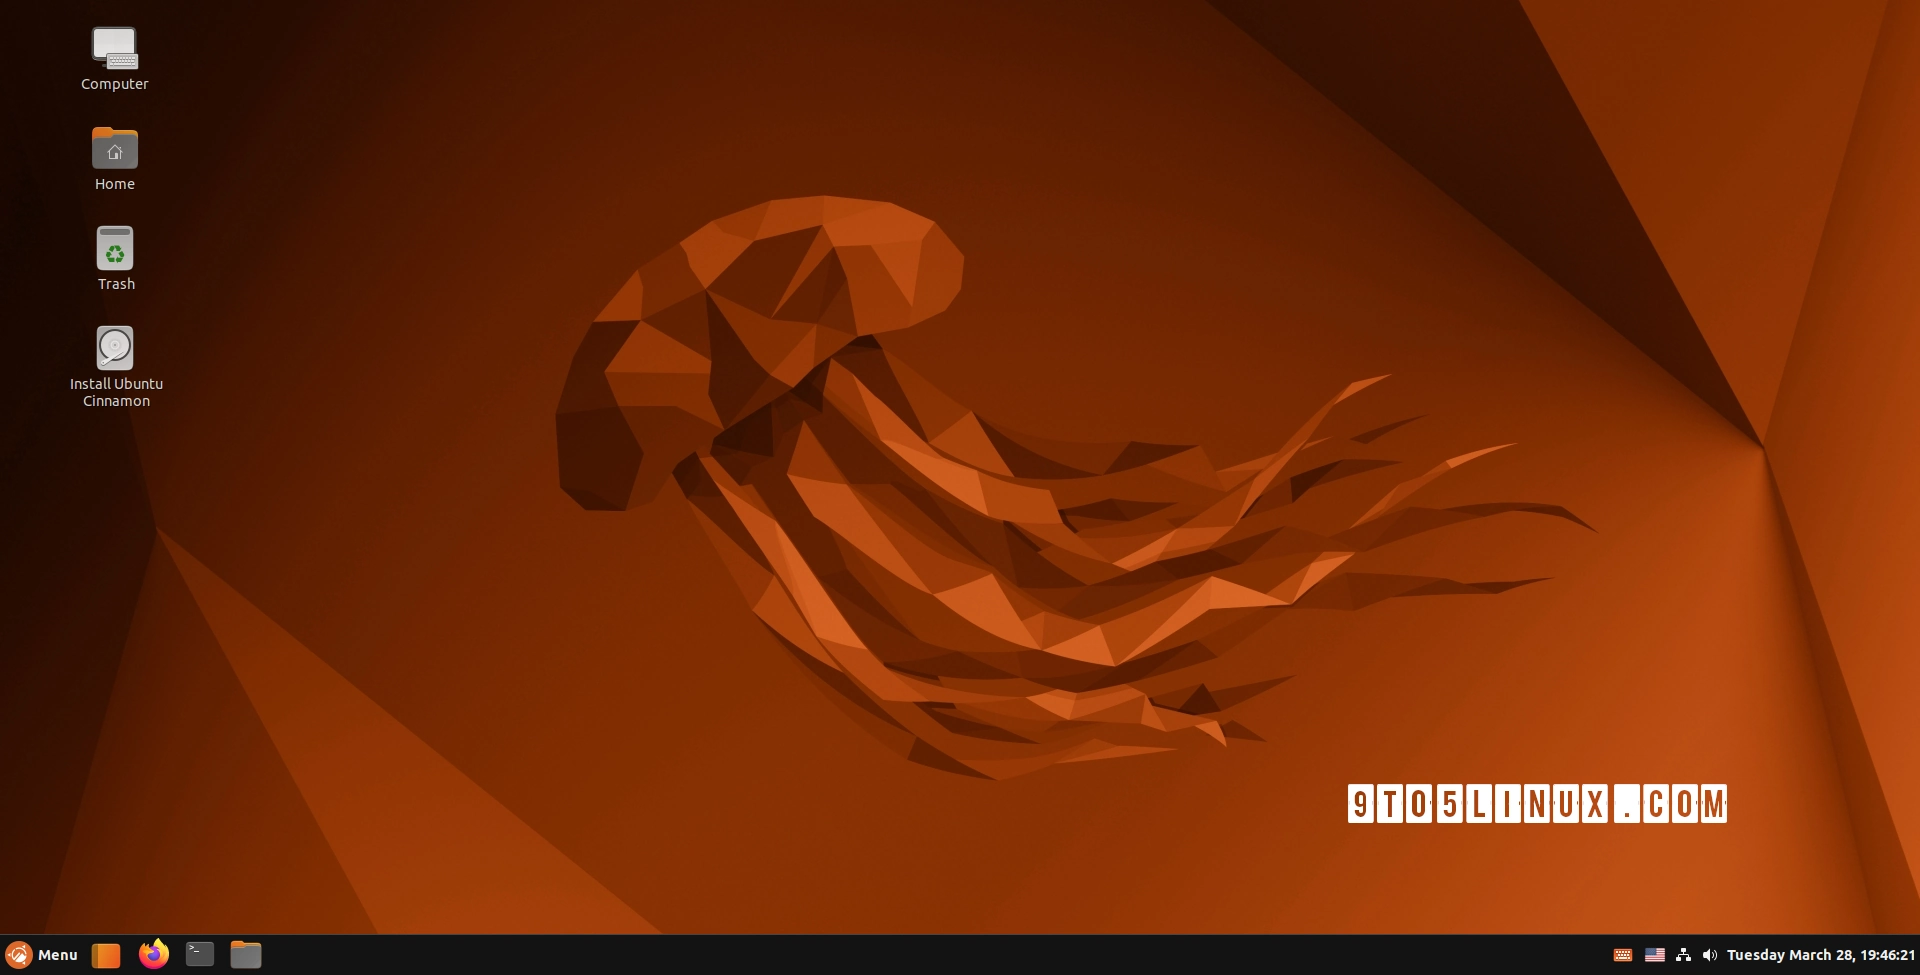 Ubuntu Cinnamon Remix Becomes Official Ubuntu Flavor